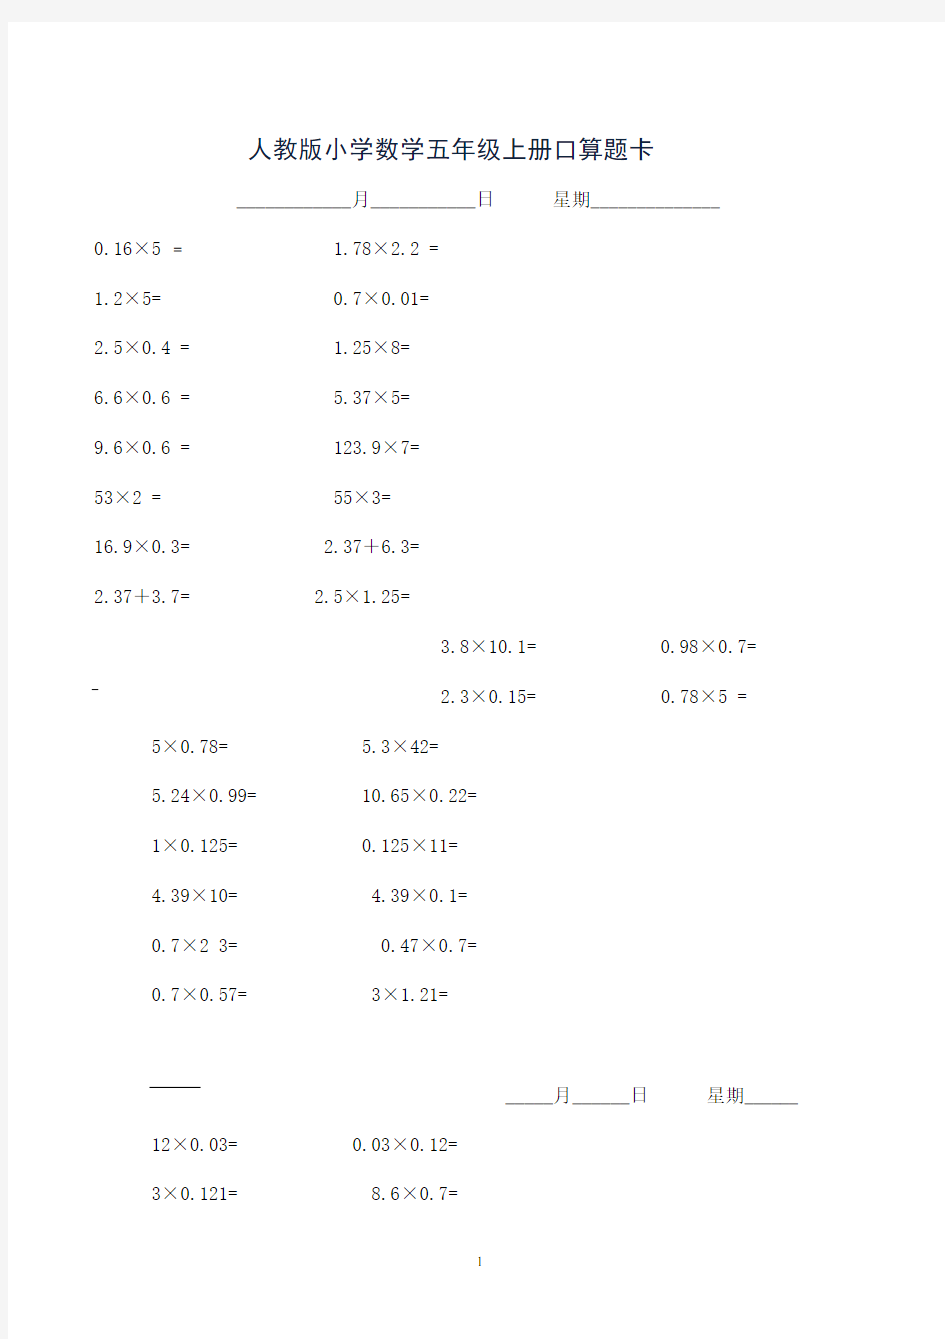 人教版小学数学五年级上册口算题练习卡--- -(1)